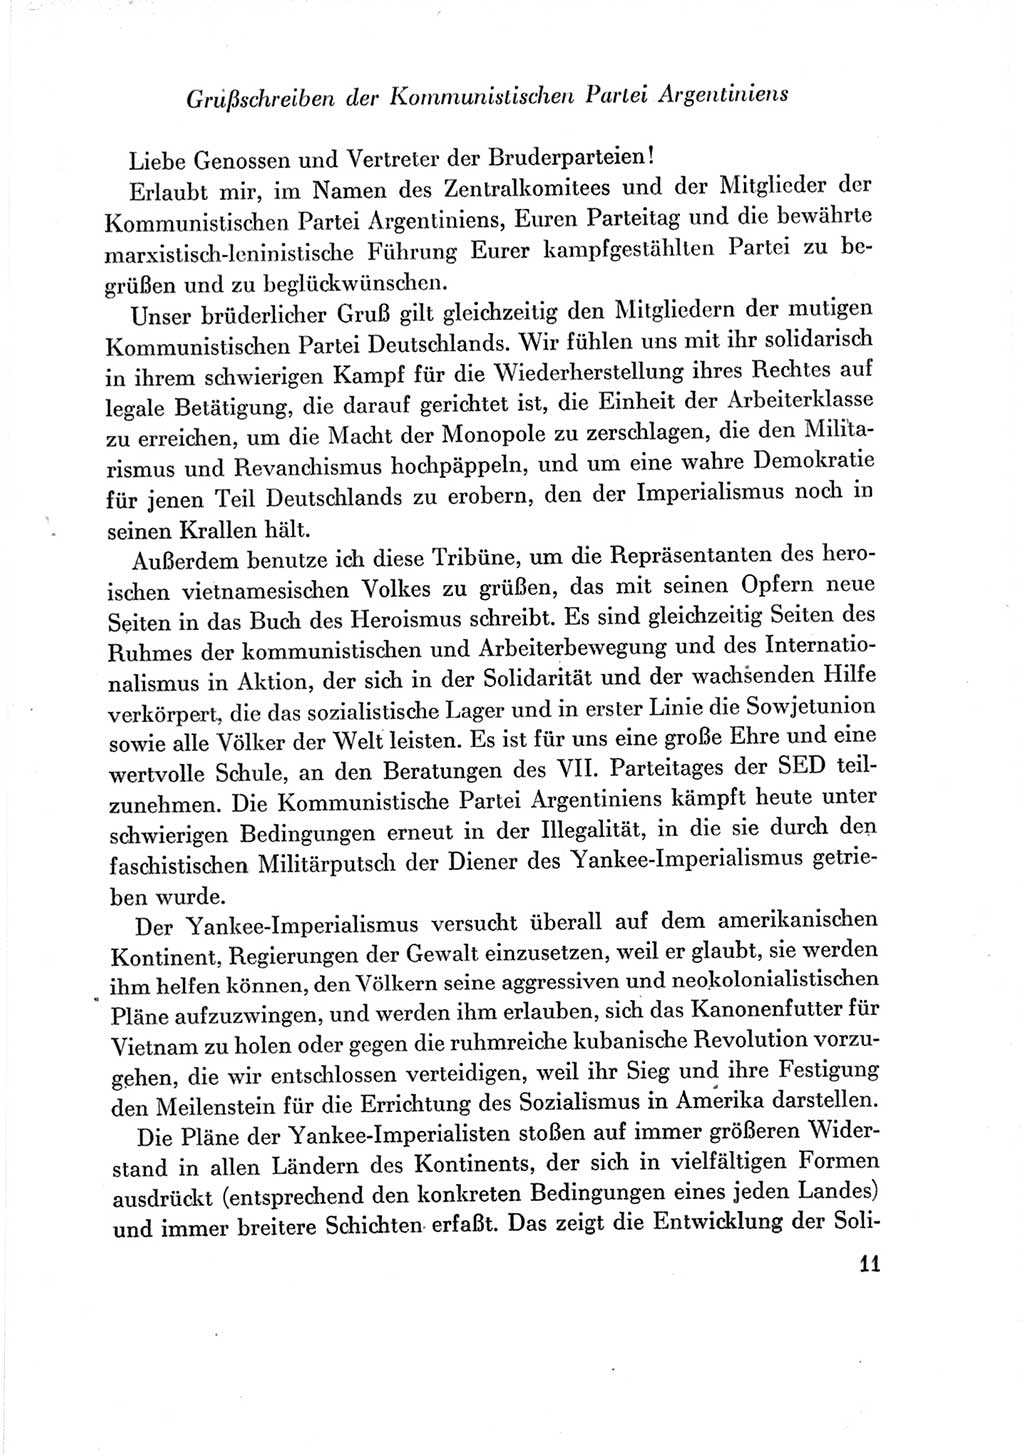 Protokoll der Verhandlungen des Ⅶ. Parteitages der Sozialistischen Einheitspartei Deutschlands (SED) [Deutsche Demokratische Republik (DDR)] 1967, Band Ⅲ, Seite 11 (Prot. Verh. Ⅶ. PT SED DDR 1967, Bd. Ⅲ, S. 11)